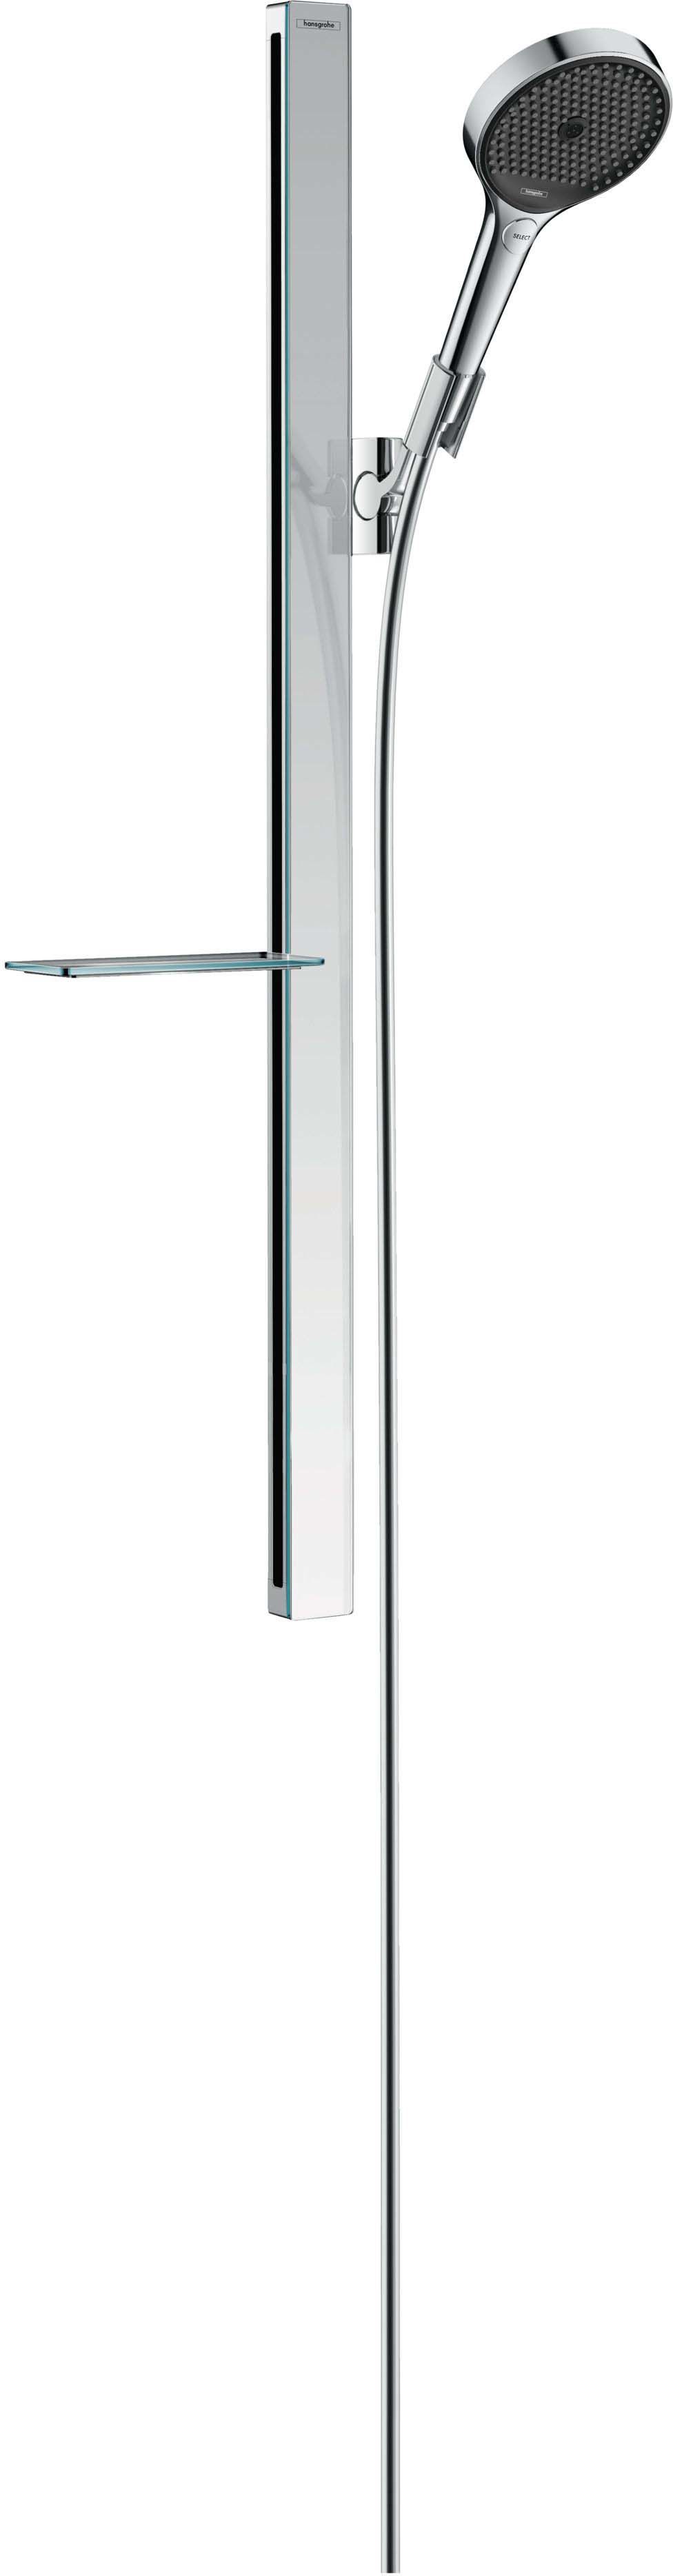 Shower set 130 3jet EcoSmart with shower bar 90 cm and shelf